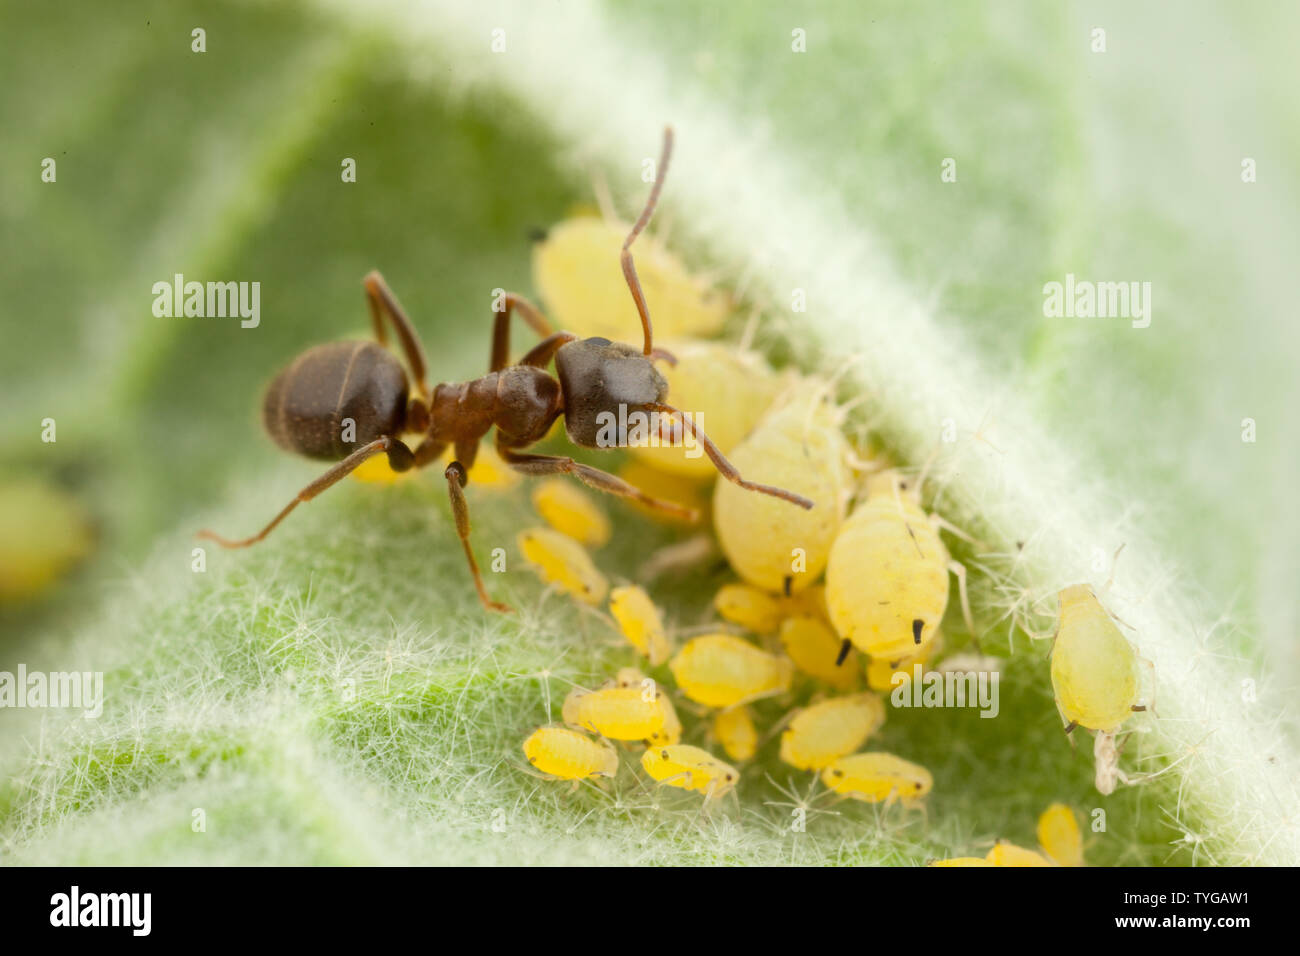 en la parte inferior de un plomo una hormiga negra se alimenta del rocío de miel excretado de un áfido Foto de stock